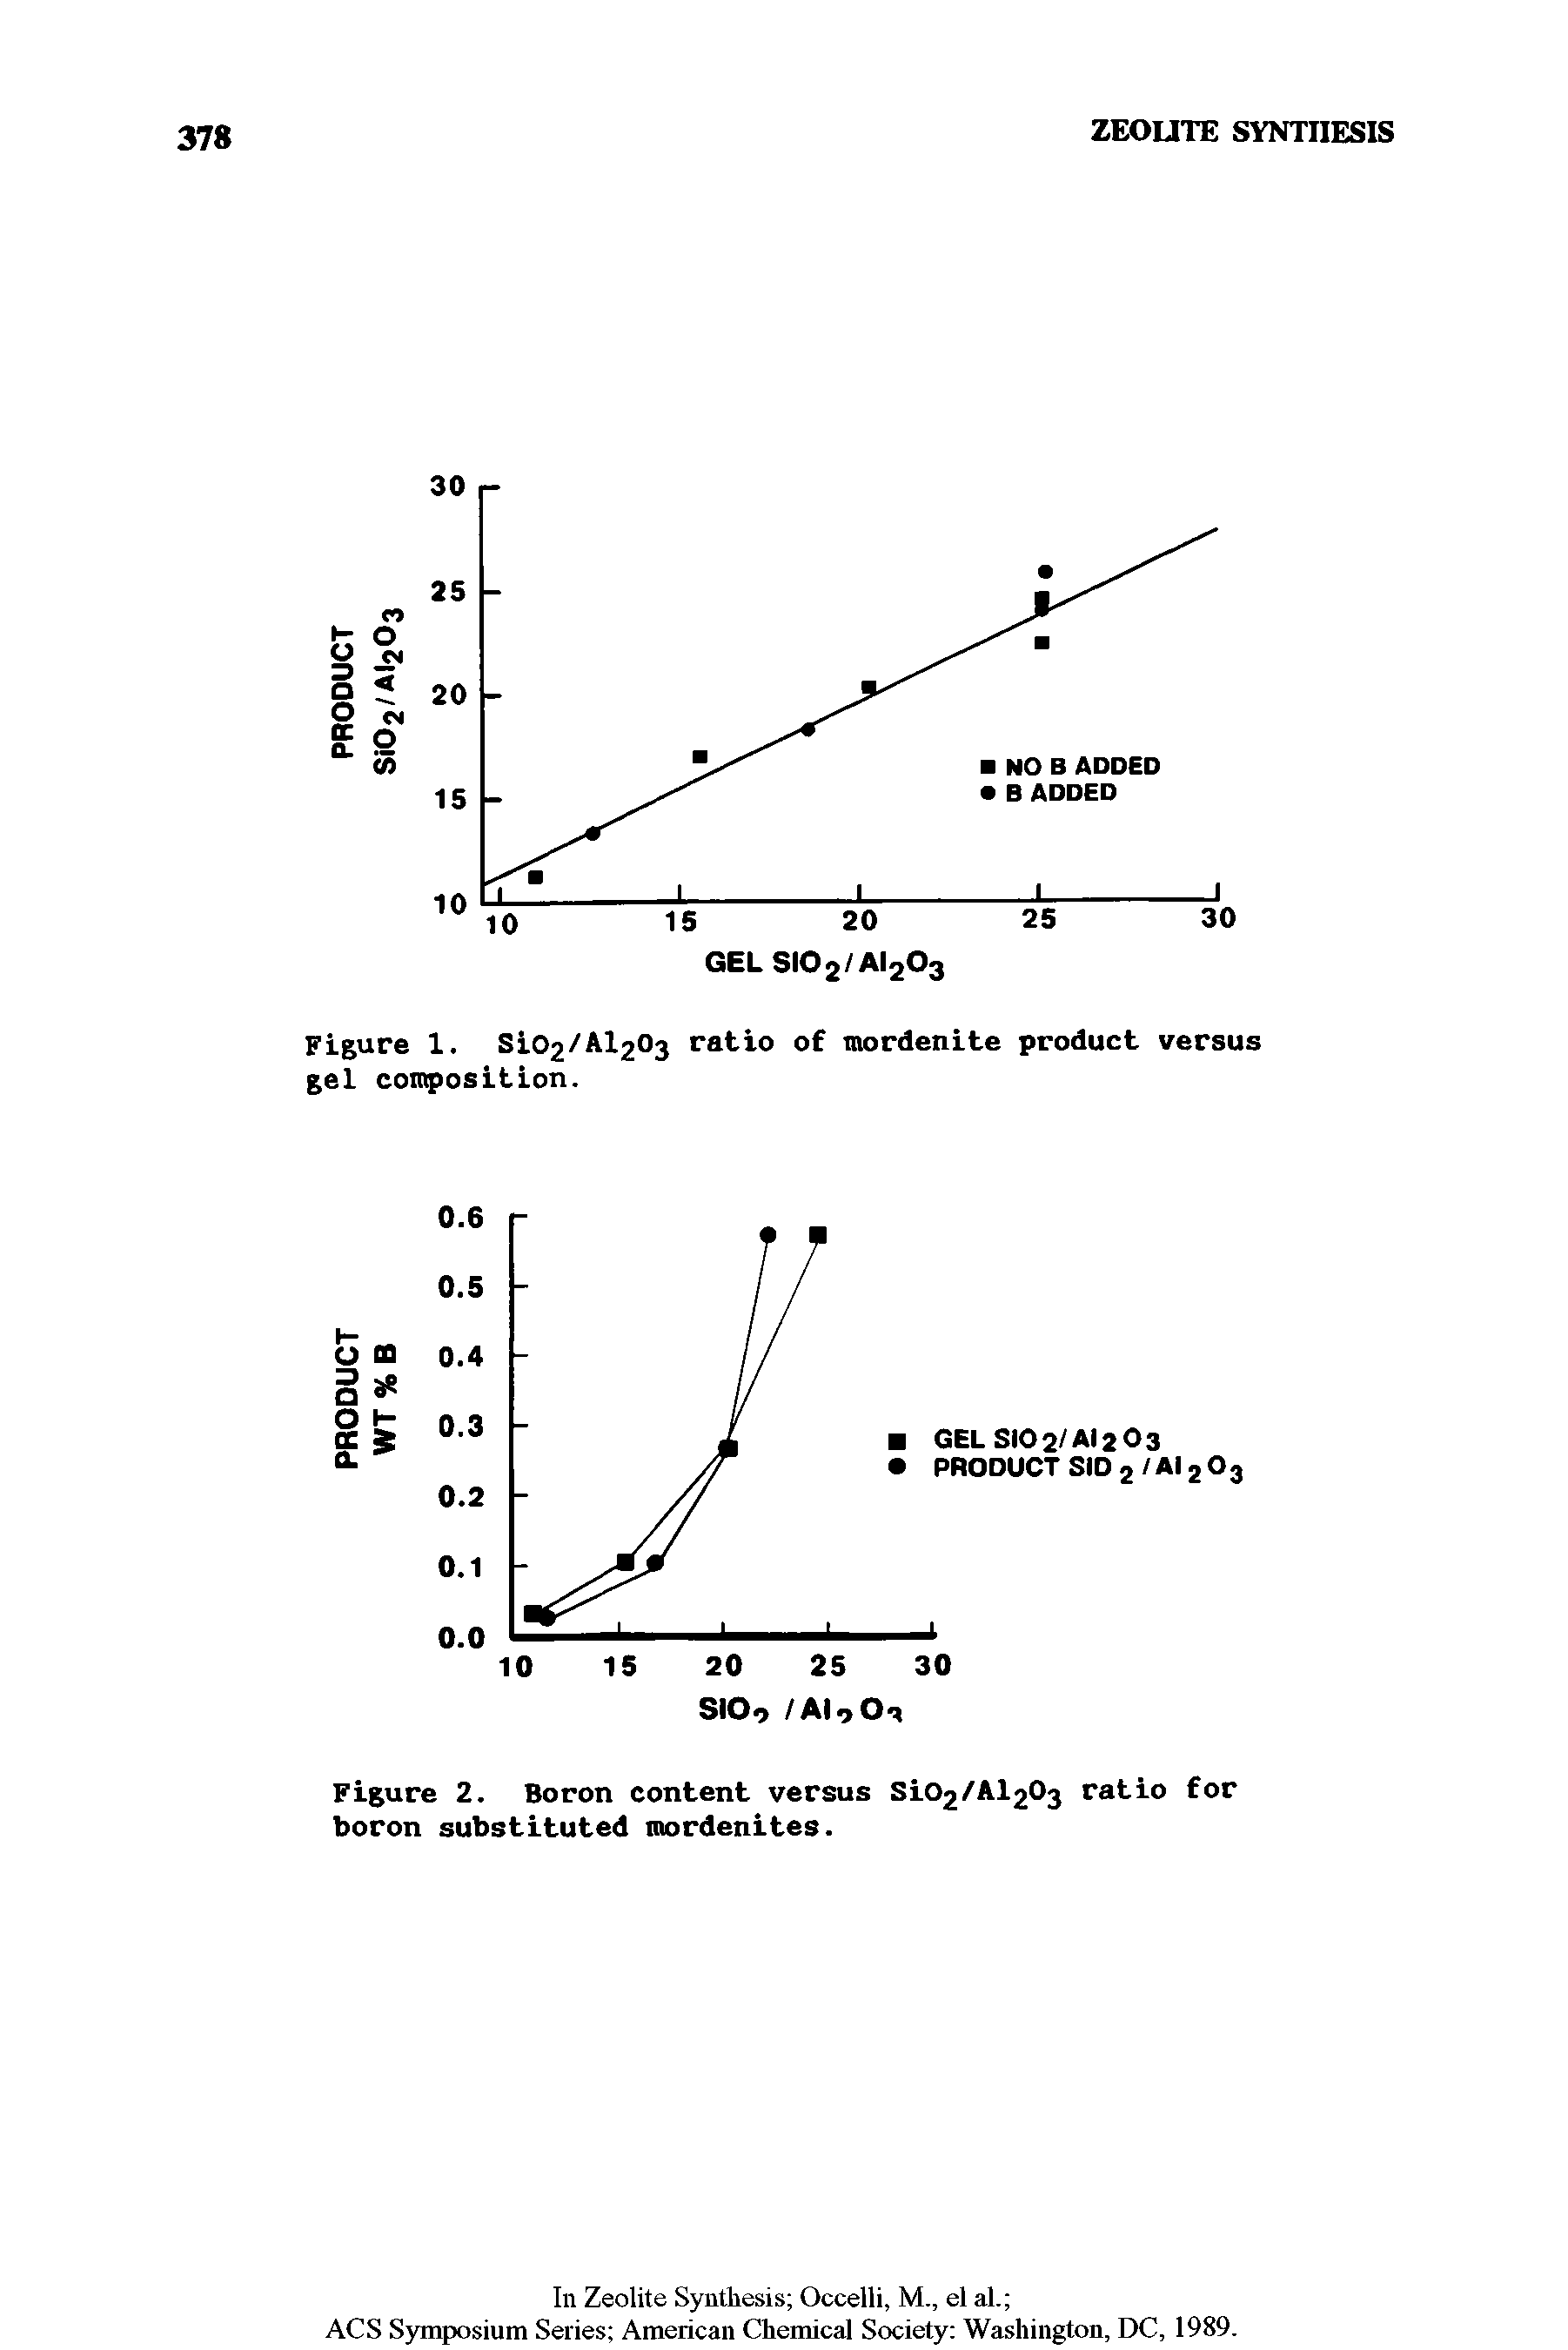 Figure 2. Boron content versus SiC /A Oj ratio for boron substituted mordenites.